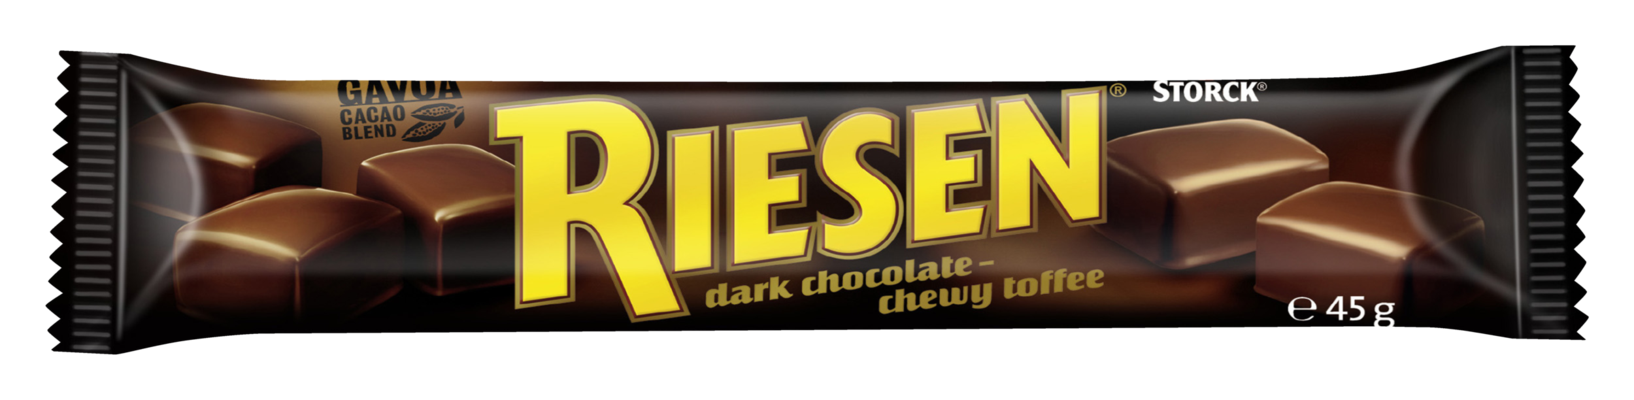 RIESEN Stick Pack 5x - Chocolate toffee in rich dark chocolate (30%)